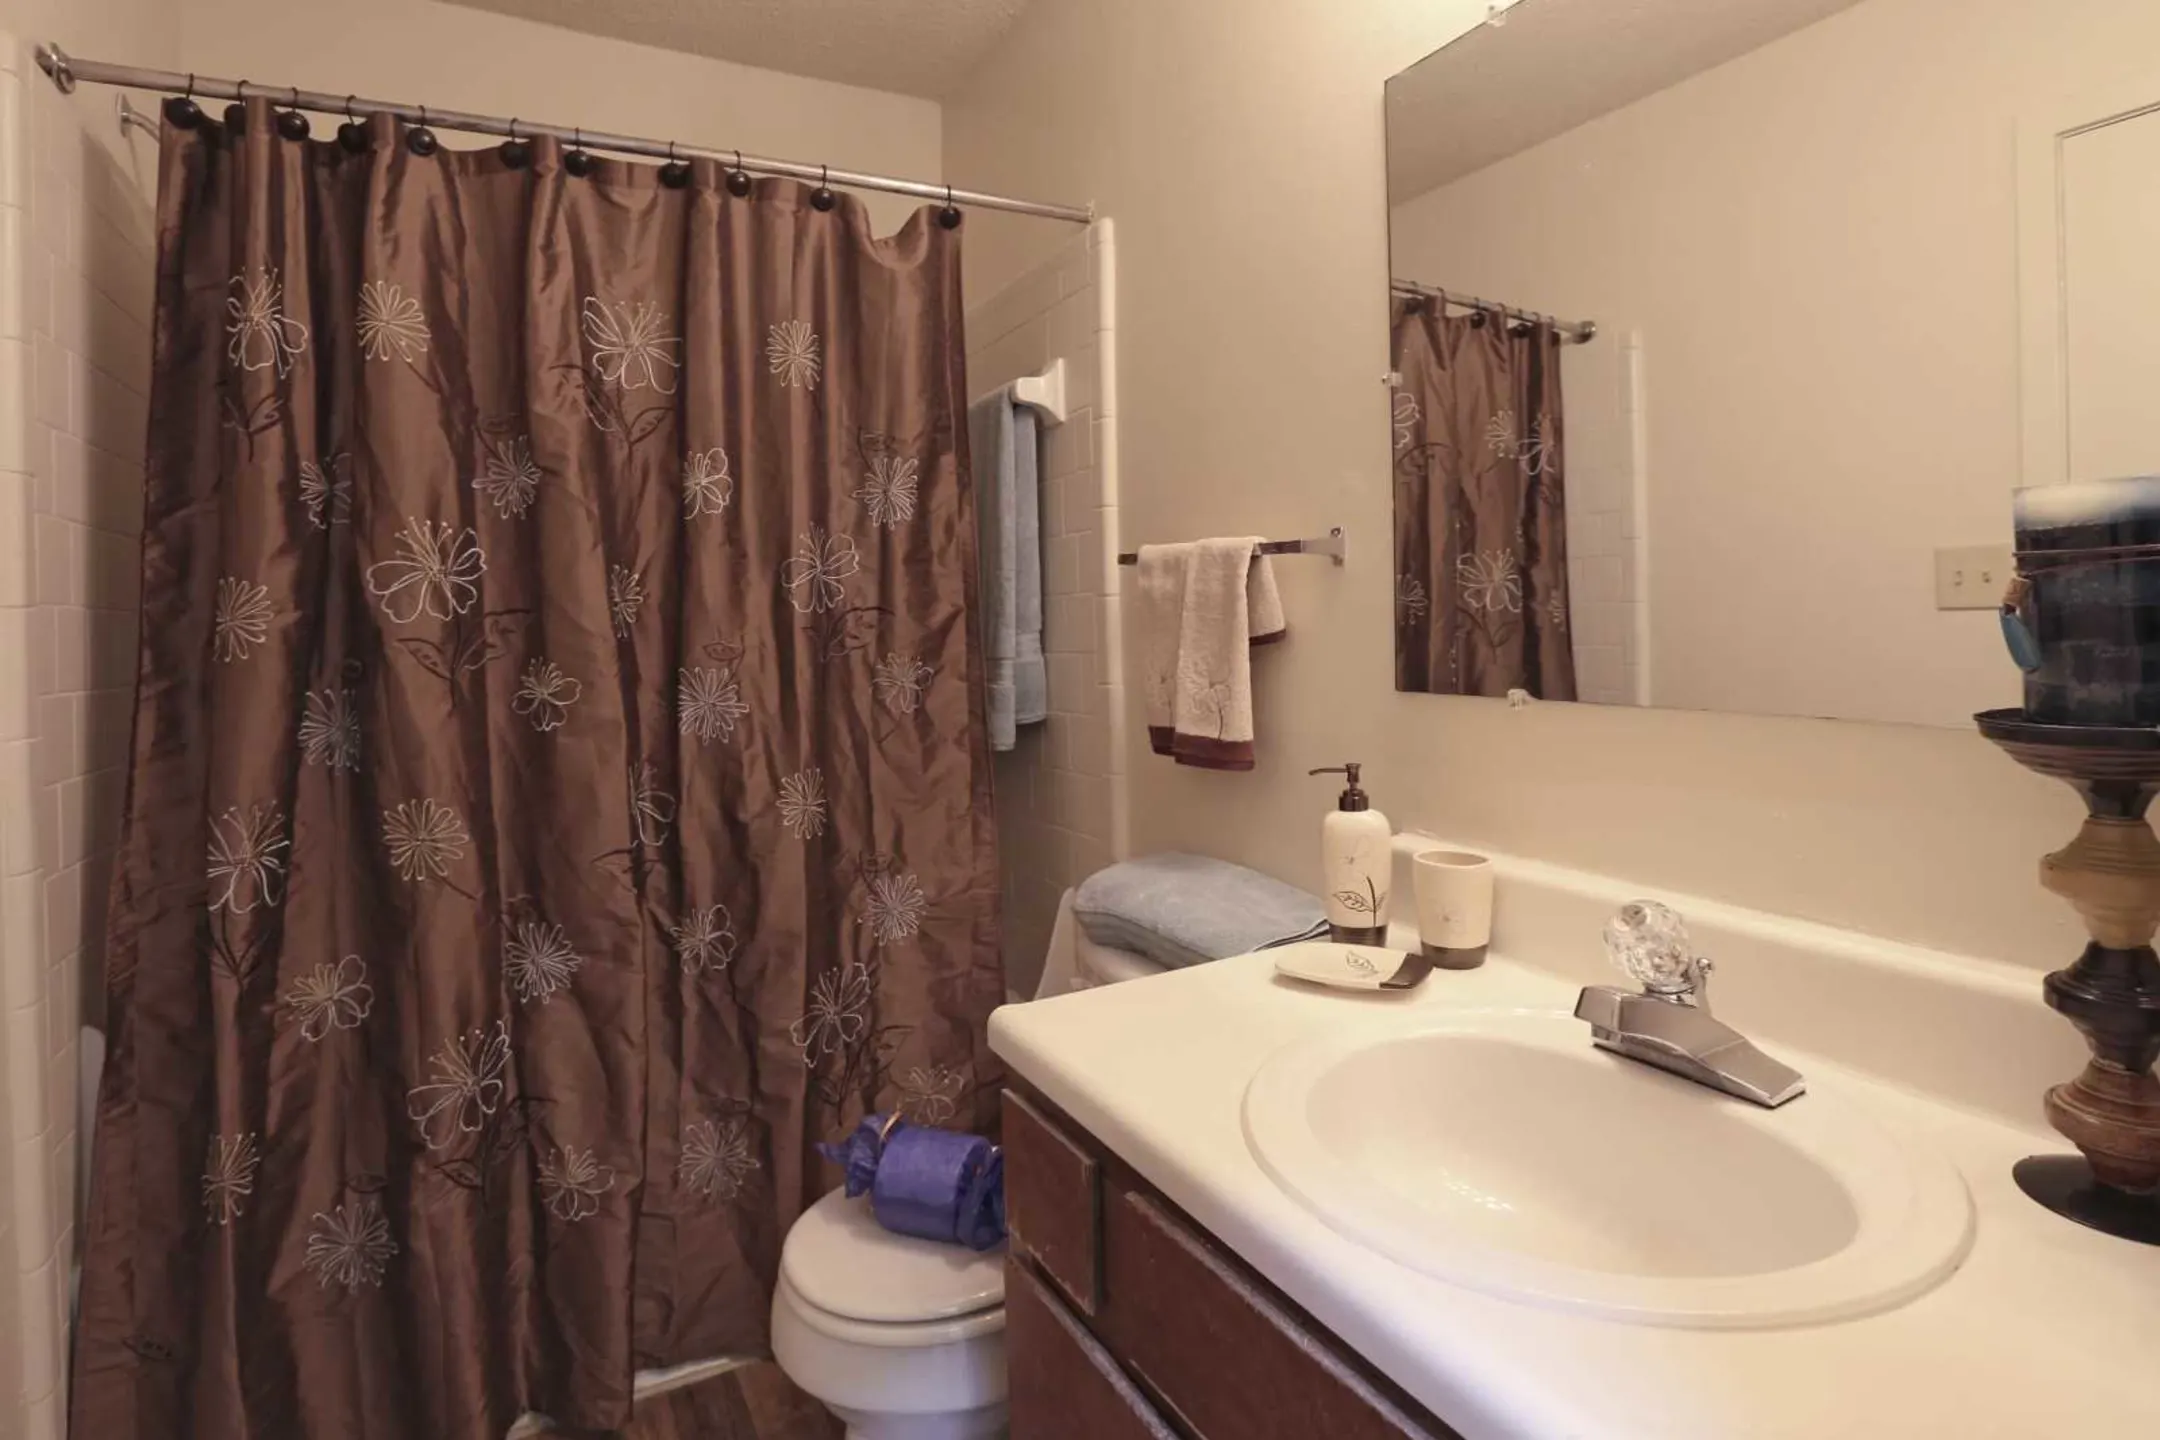 Bathroom - The Bluffs - Spartanburg, SC